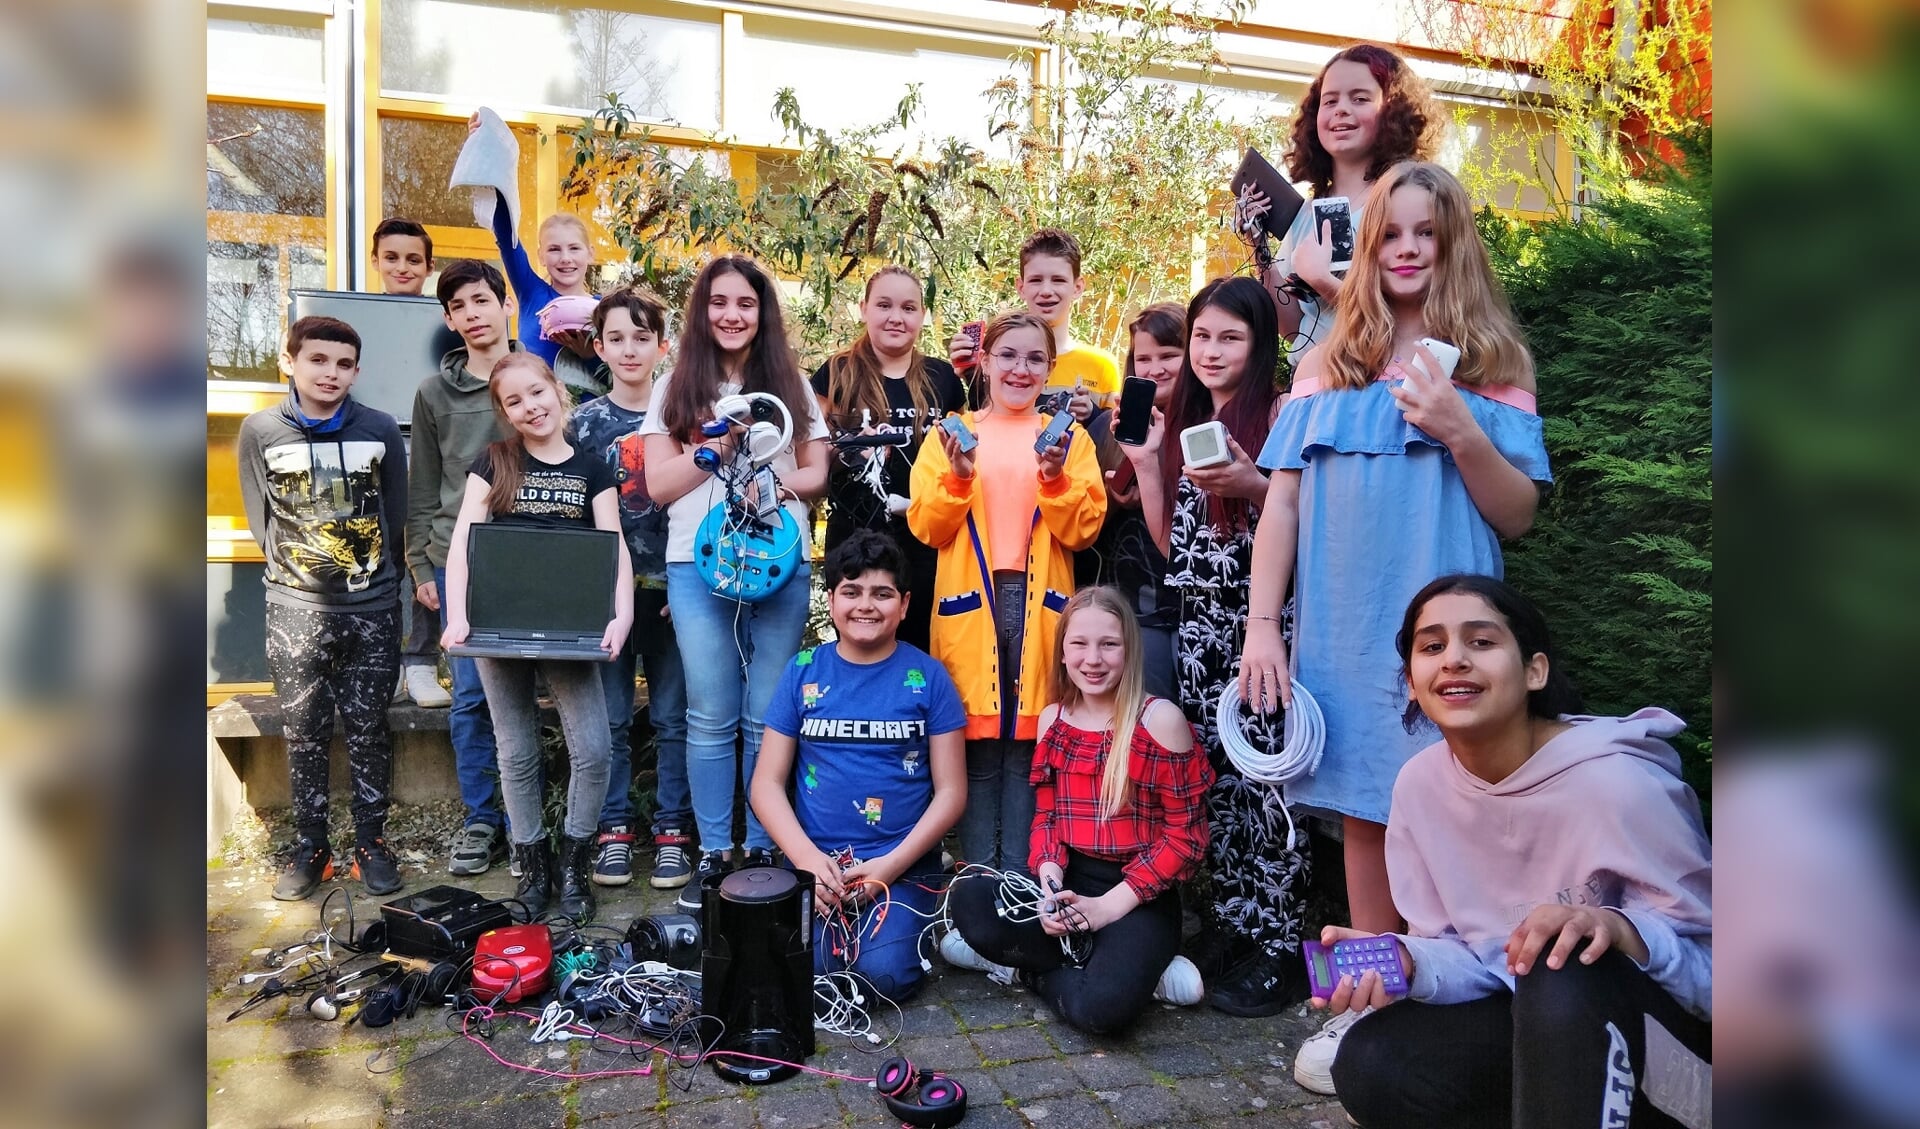 Leerlingen van de Prinses Margrietschool uit Tiel tonen trots de elektrische apparaten die zij hebben ingezameld